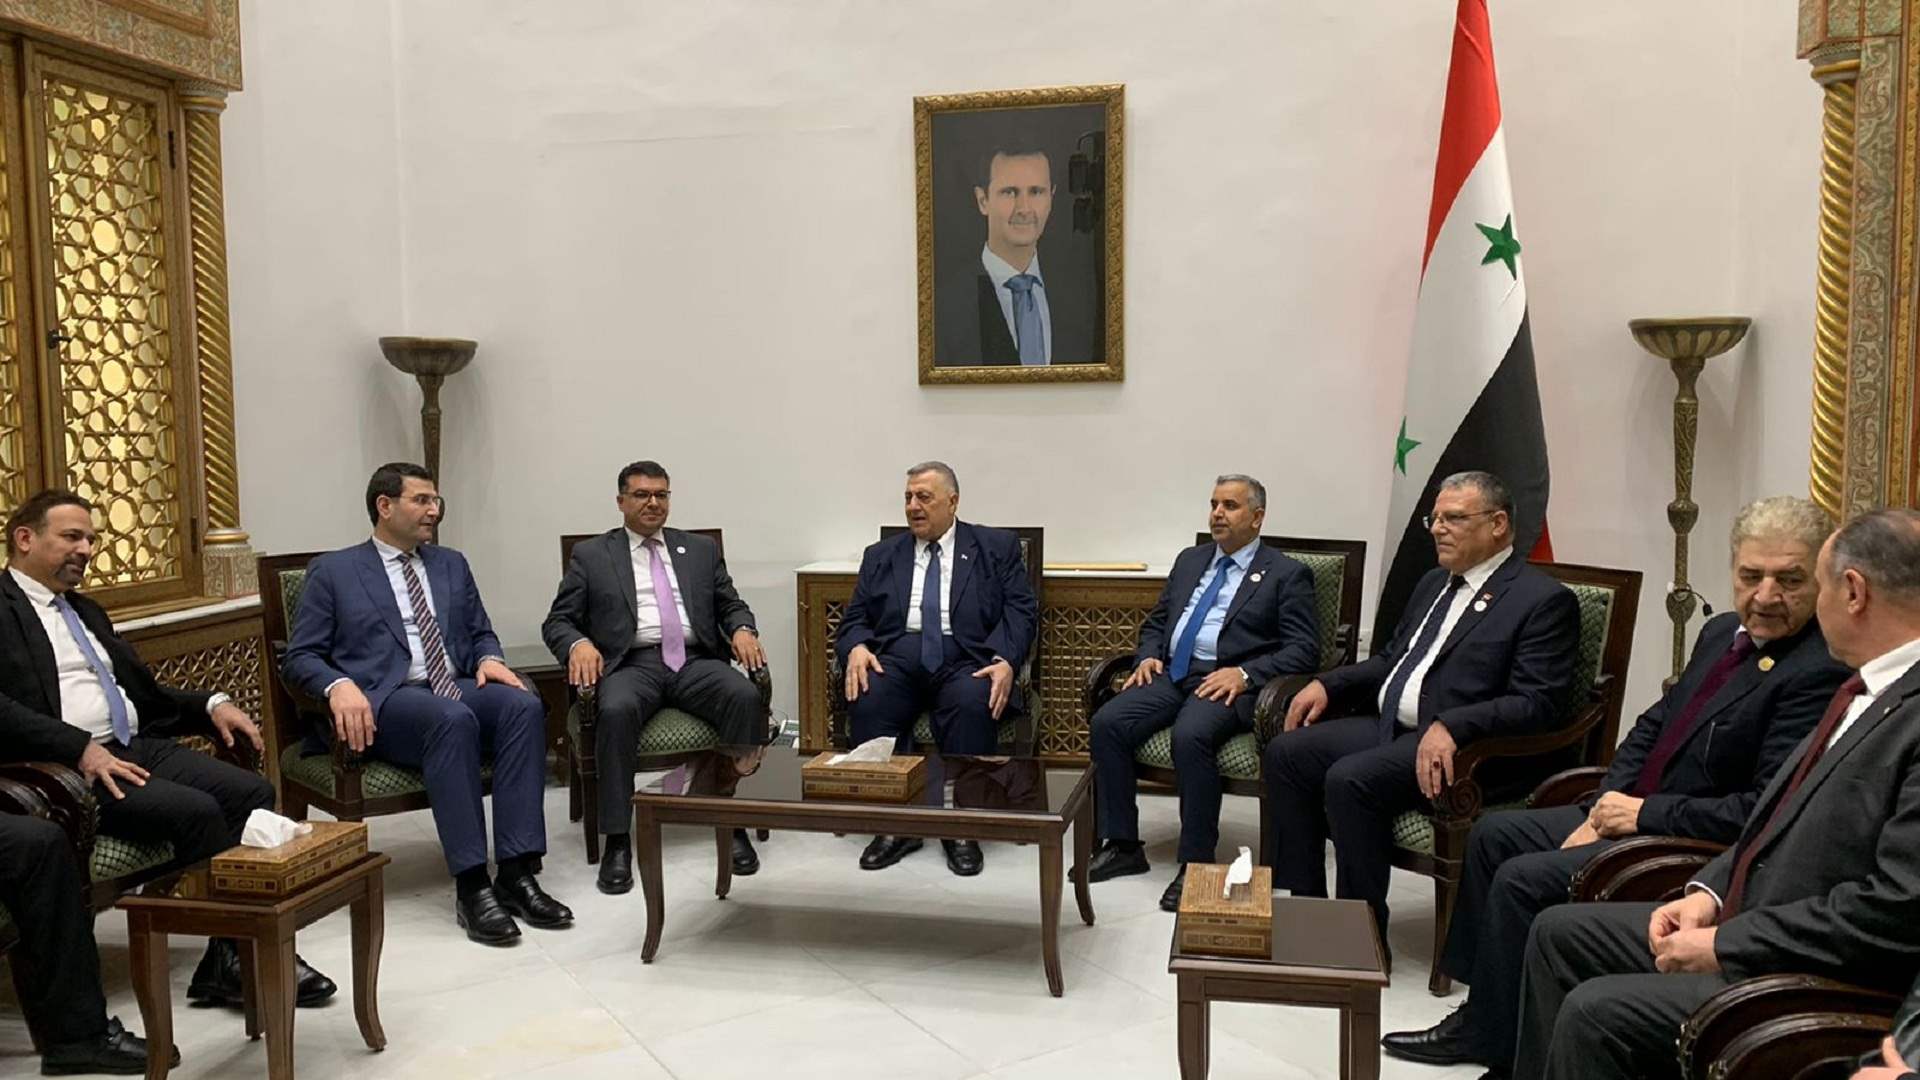 وزراء الزراعة المشاركون في اللقاء الرباعي في دمشق بحثوا مع رئيس مجلس النواب السوري في العلاقات الإقتصادية الزراعية